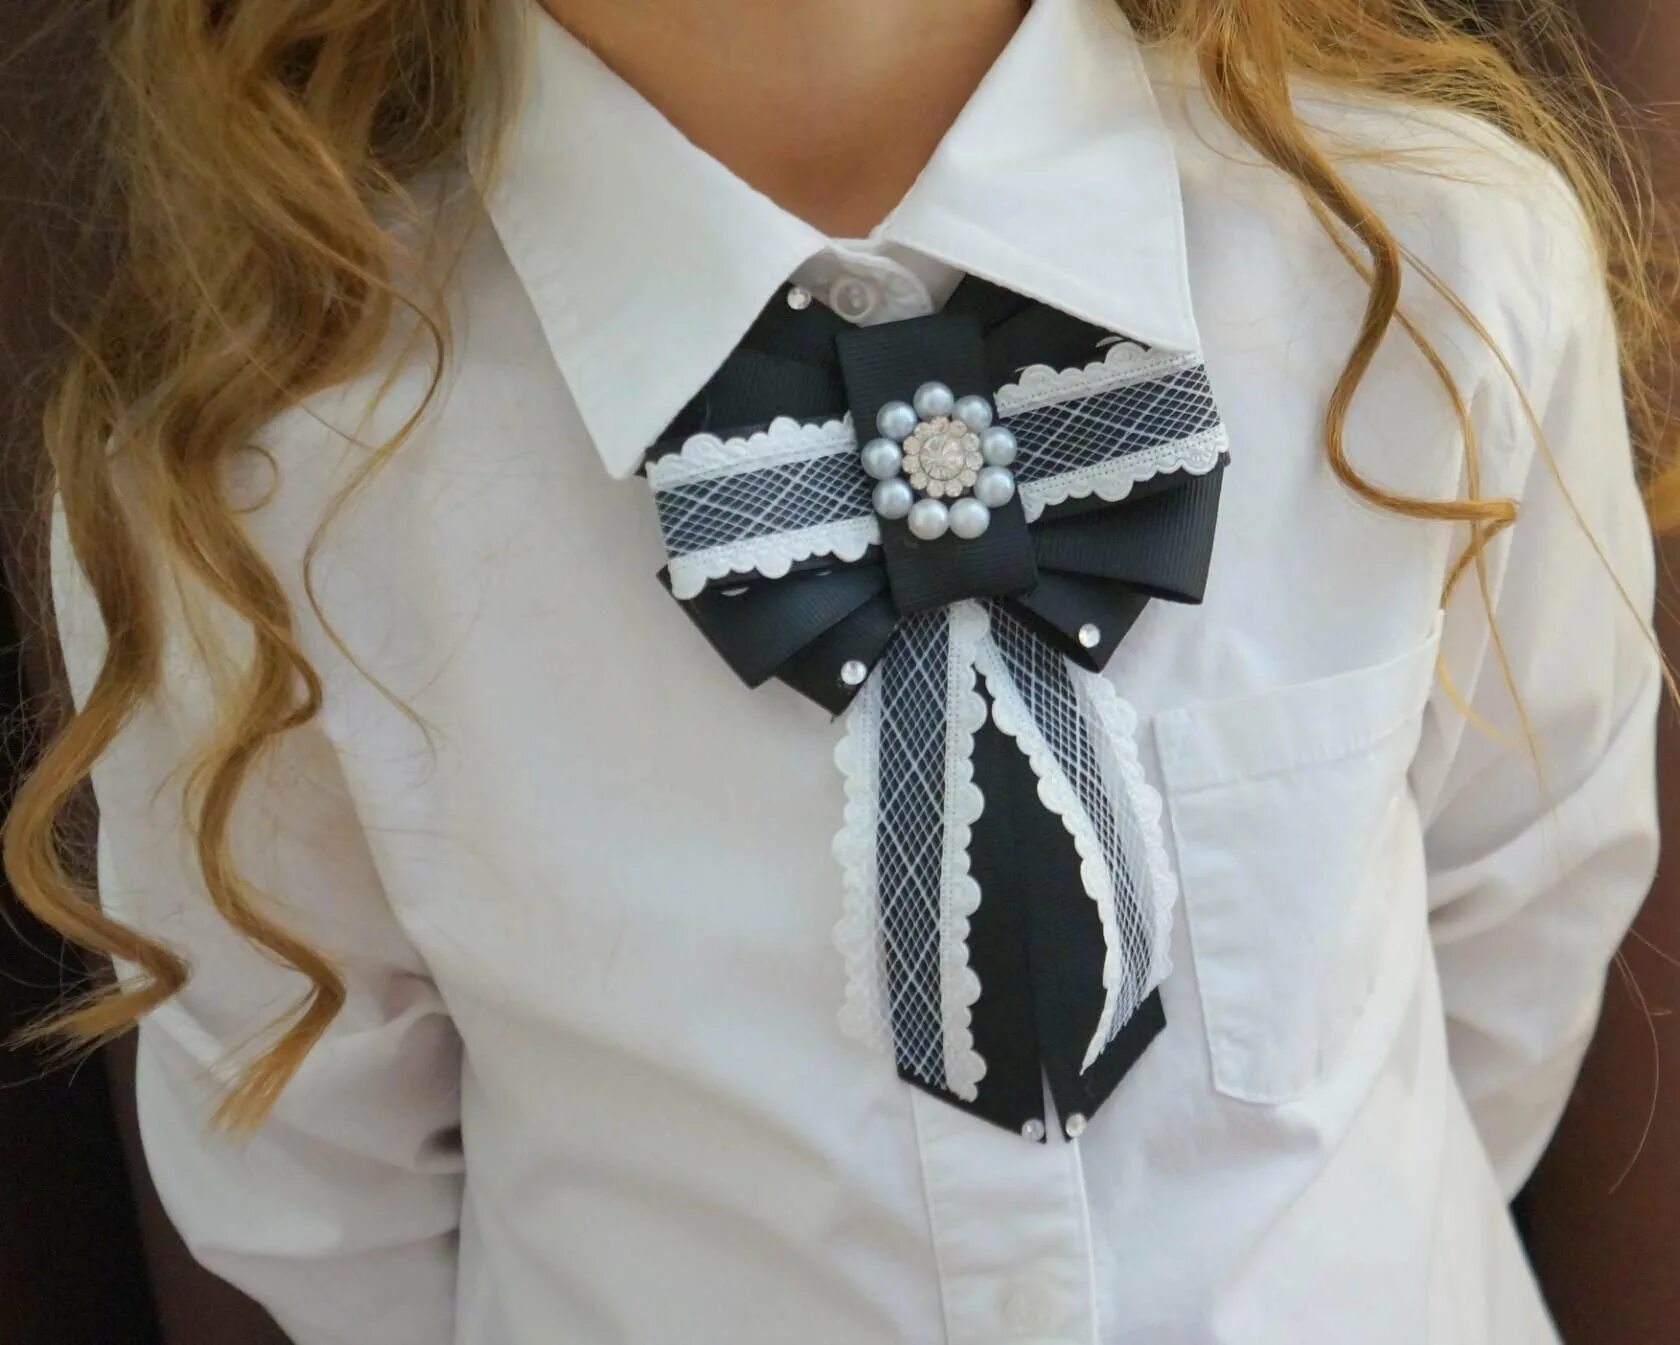 Украшение на блузку. Галстук для девочки. Галстуки броши для девочек в школу. Галстук брошь для девочки к школьной форме. Бантик галстук для девочки.